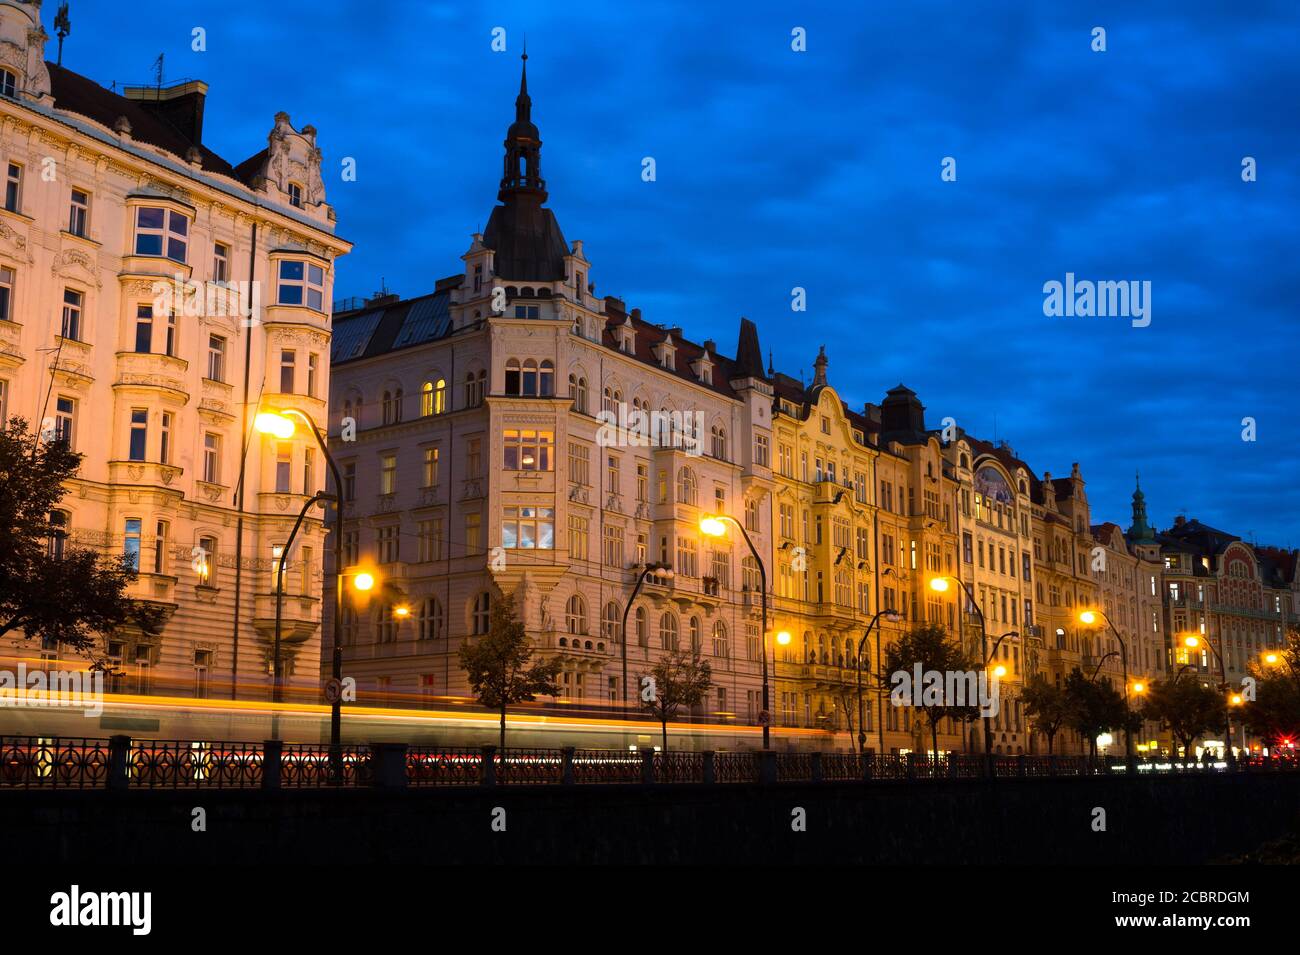 Prag, Tschechische Republik / Tschechien - schöne und dekorierte historische Stadthäuser am Masaryk-Damm sind im Stil einer Sezession gebaut. Wohnarchitektur Stockfoto